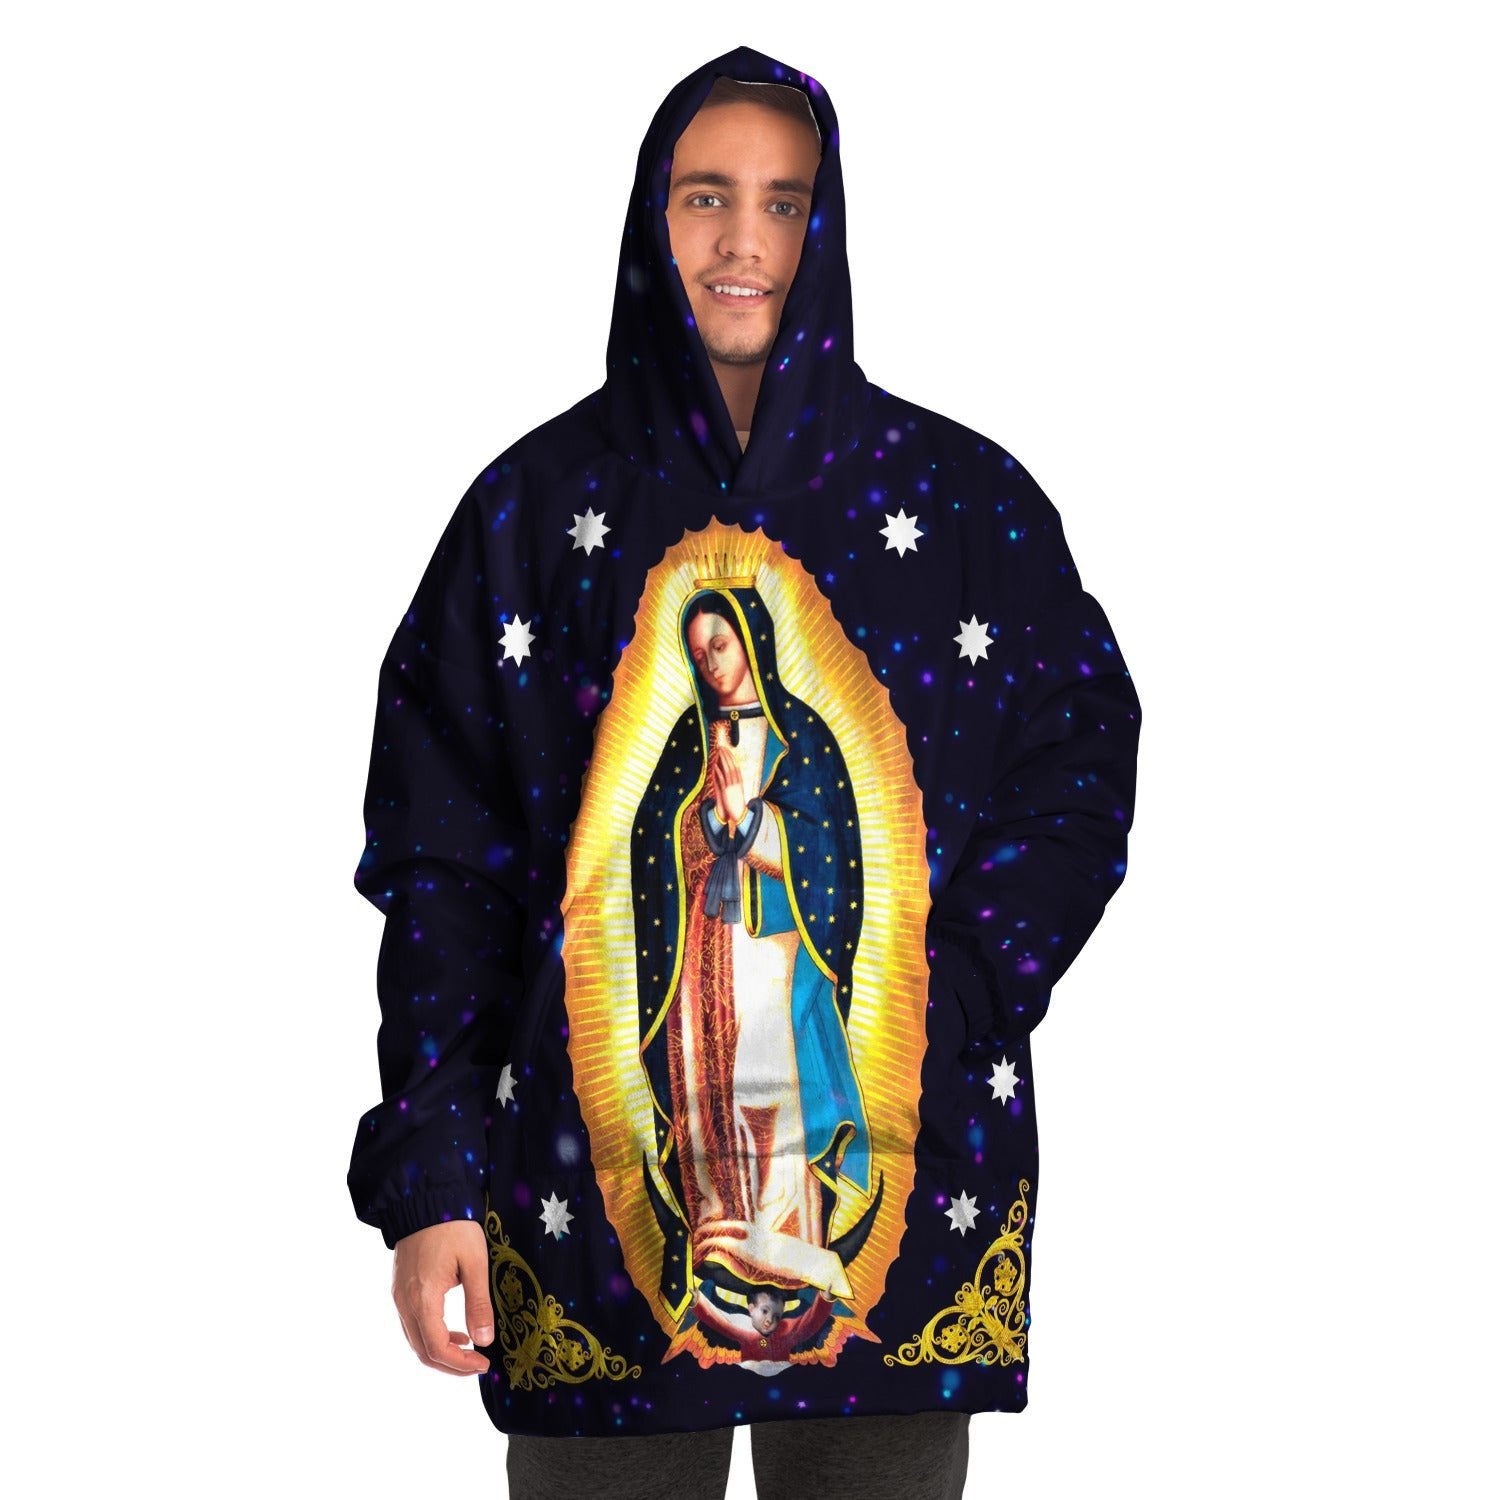 Our Lady of Guadalupe Snug Blanket Hoodie - Nuestra Señora de Guadalupe "Snug" Manta Sudadera - Catholicamtees